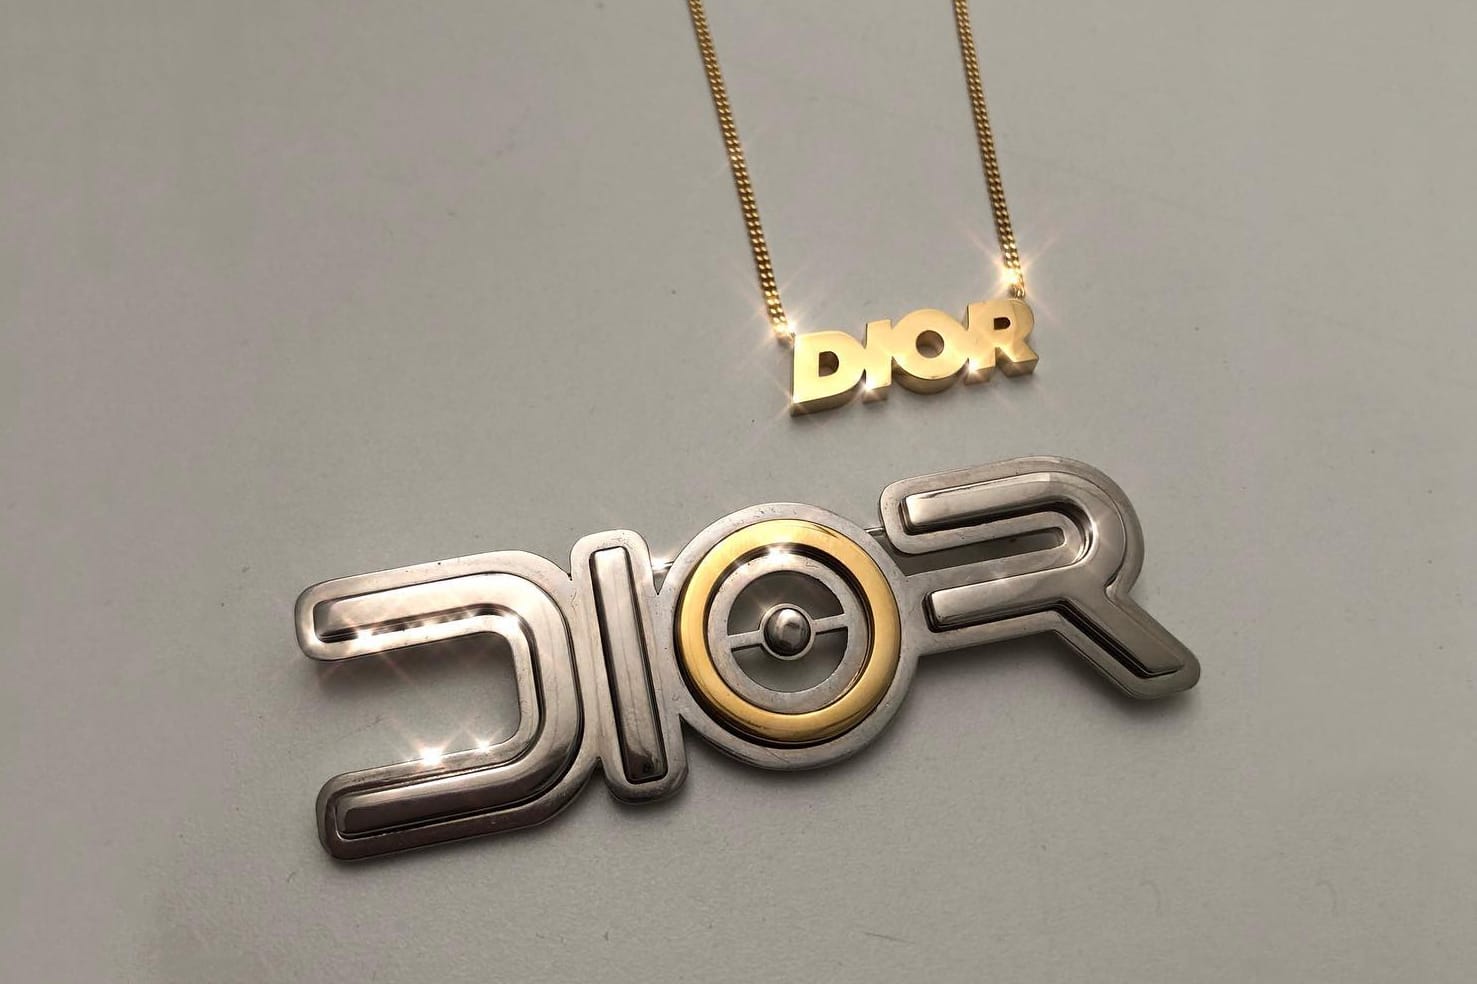 dior necklace 2018